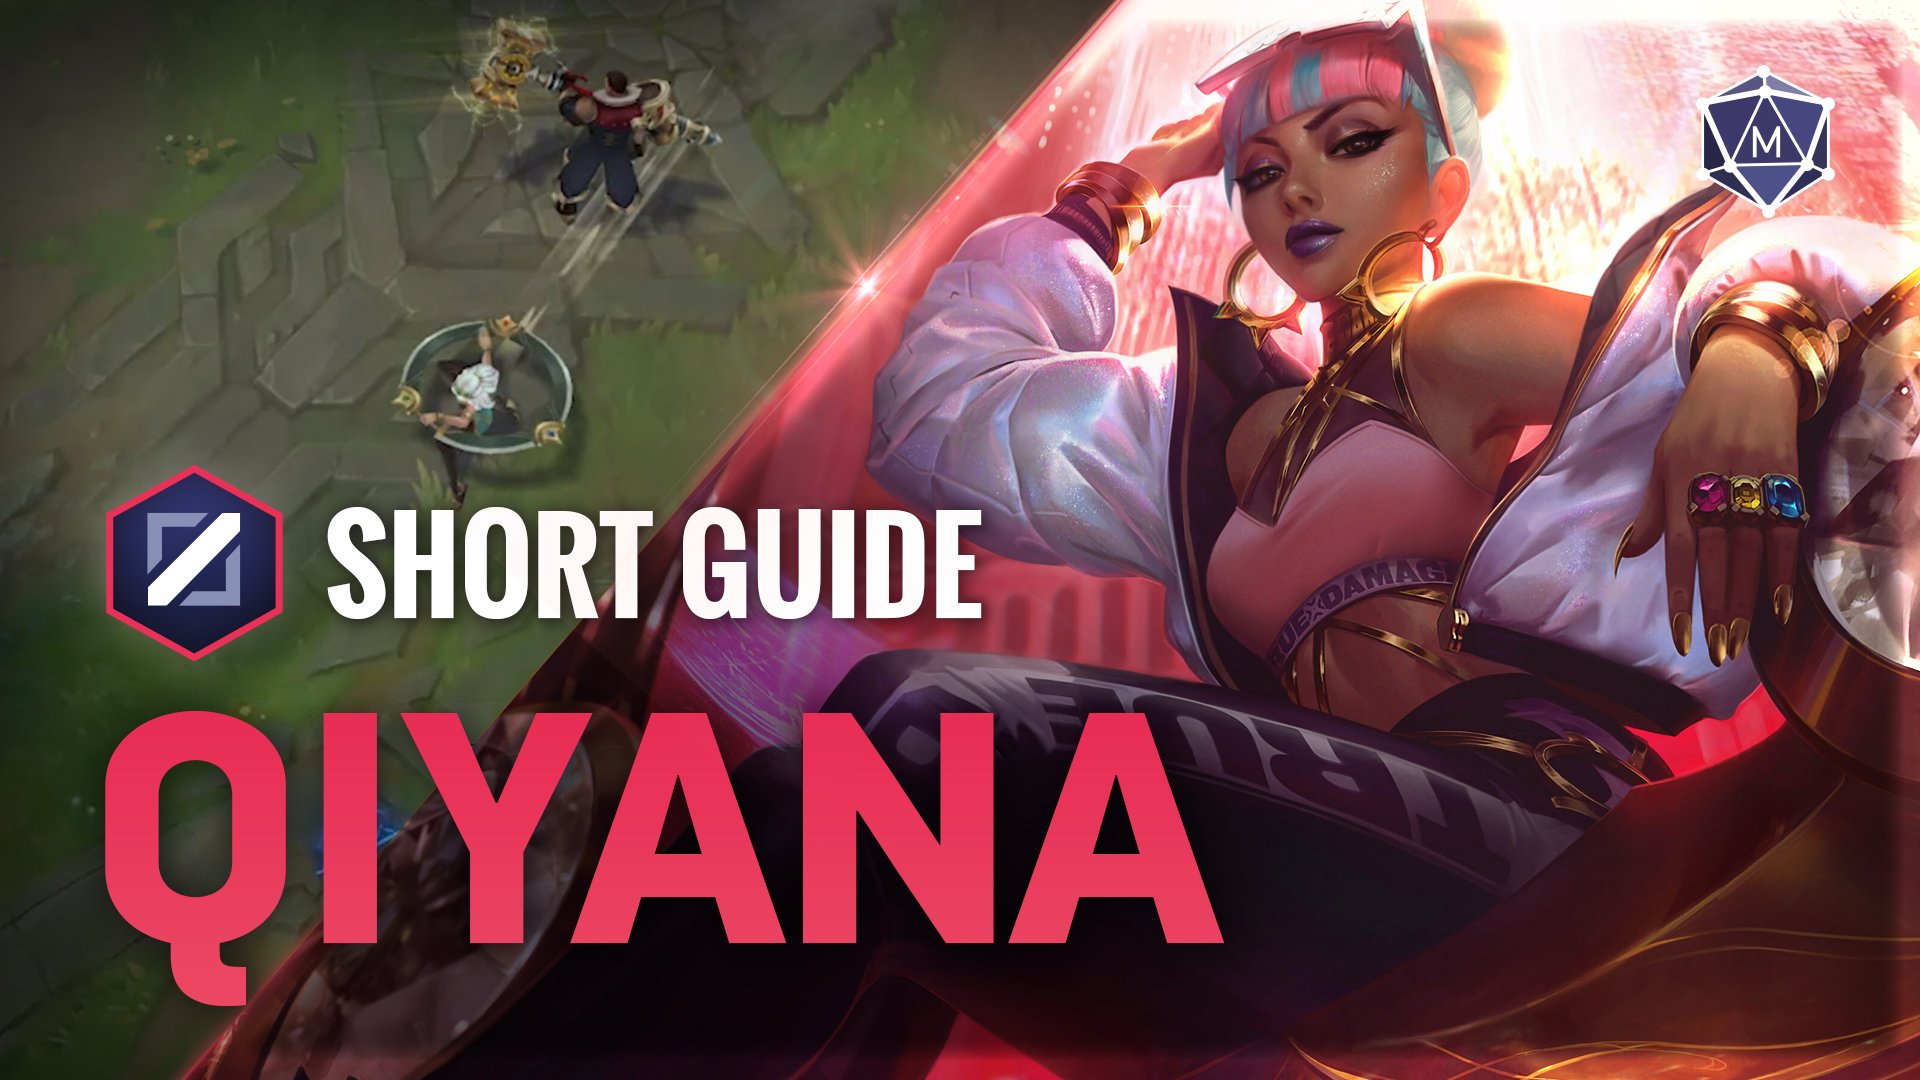 Qiyana expert guide